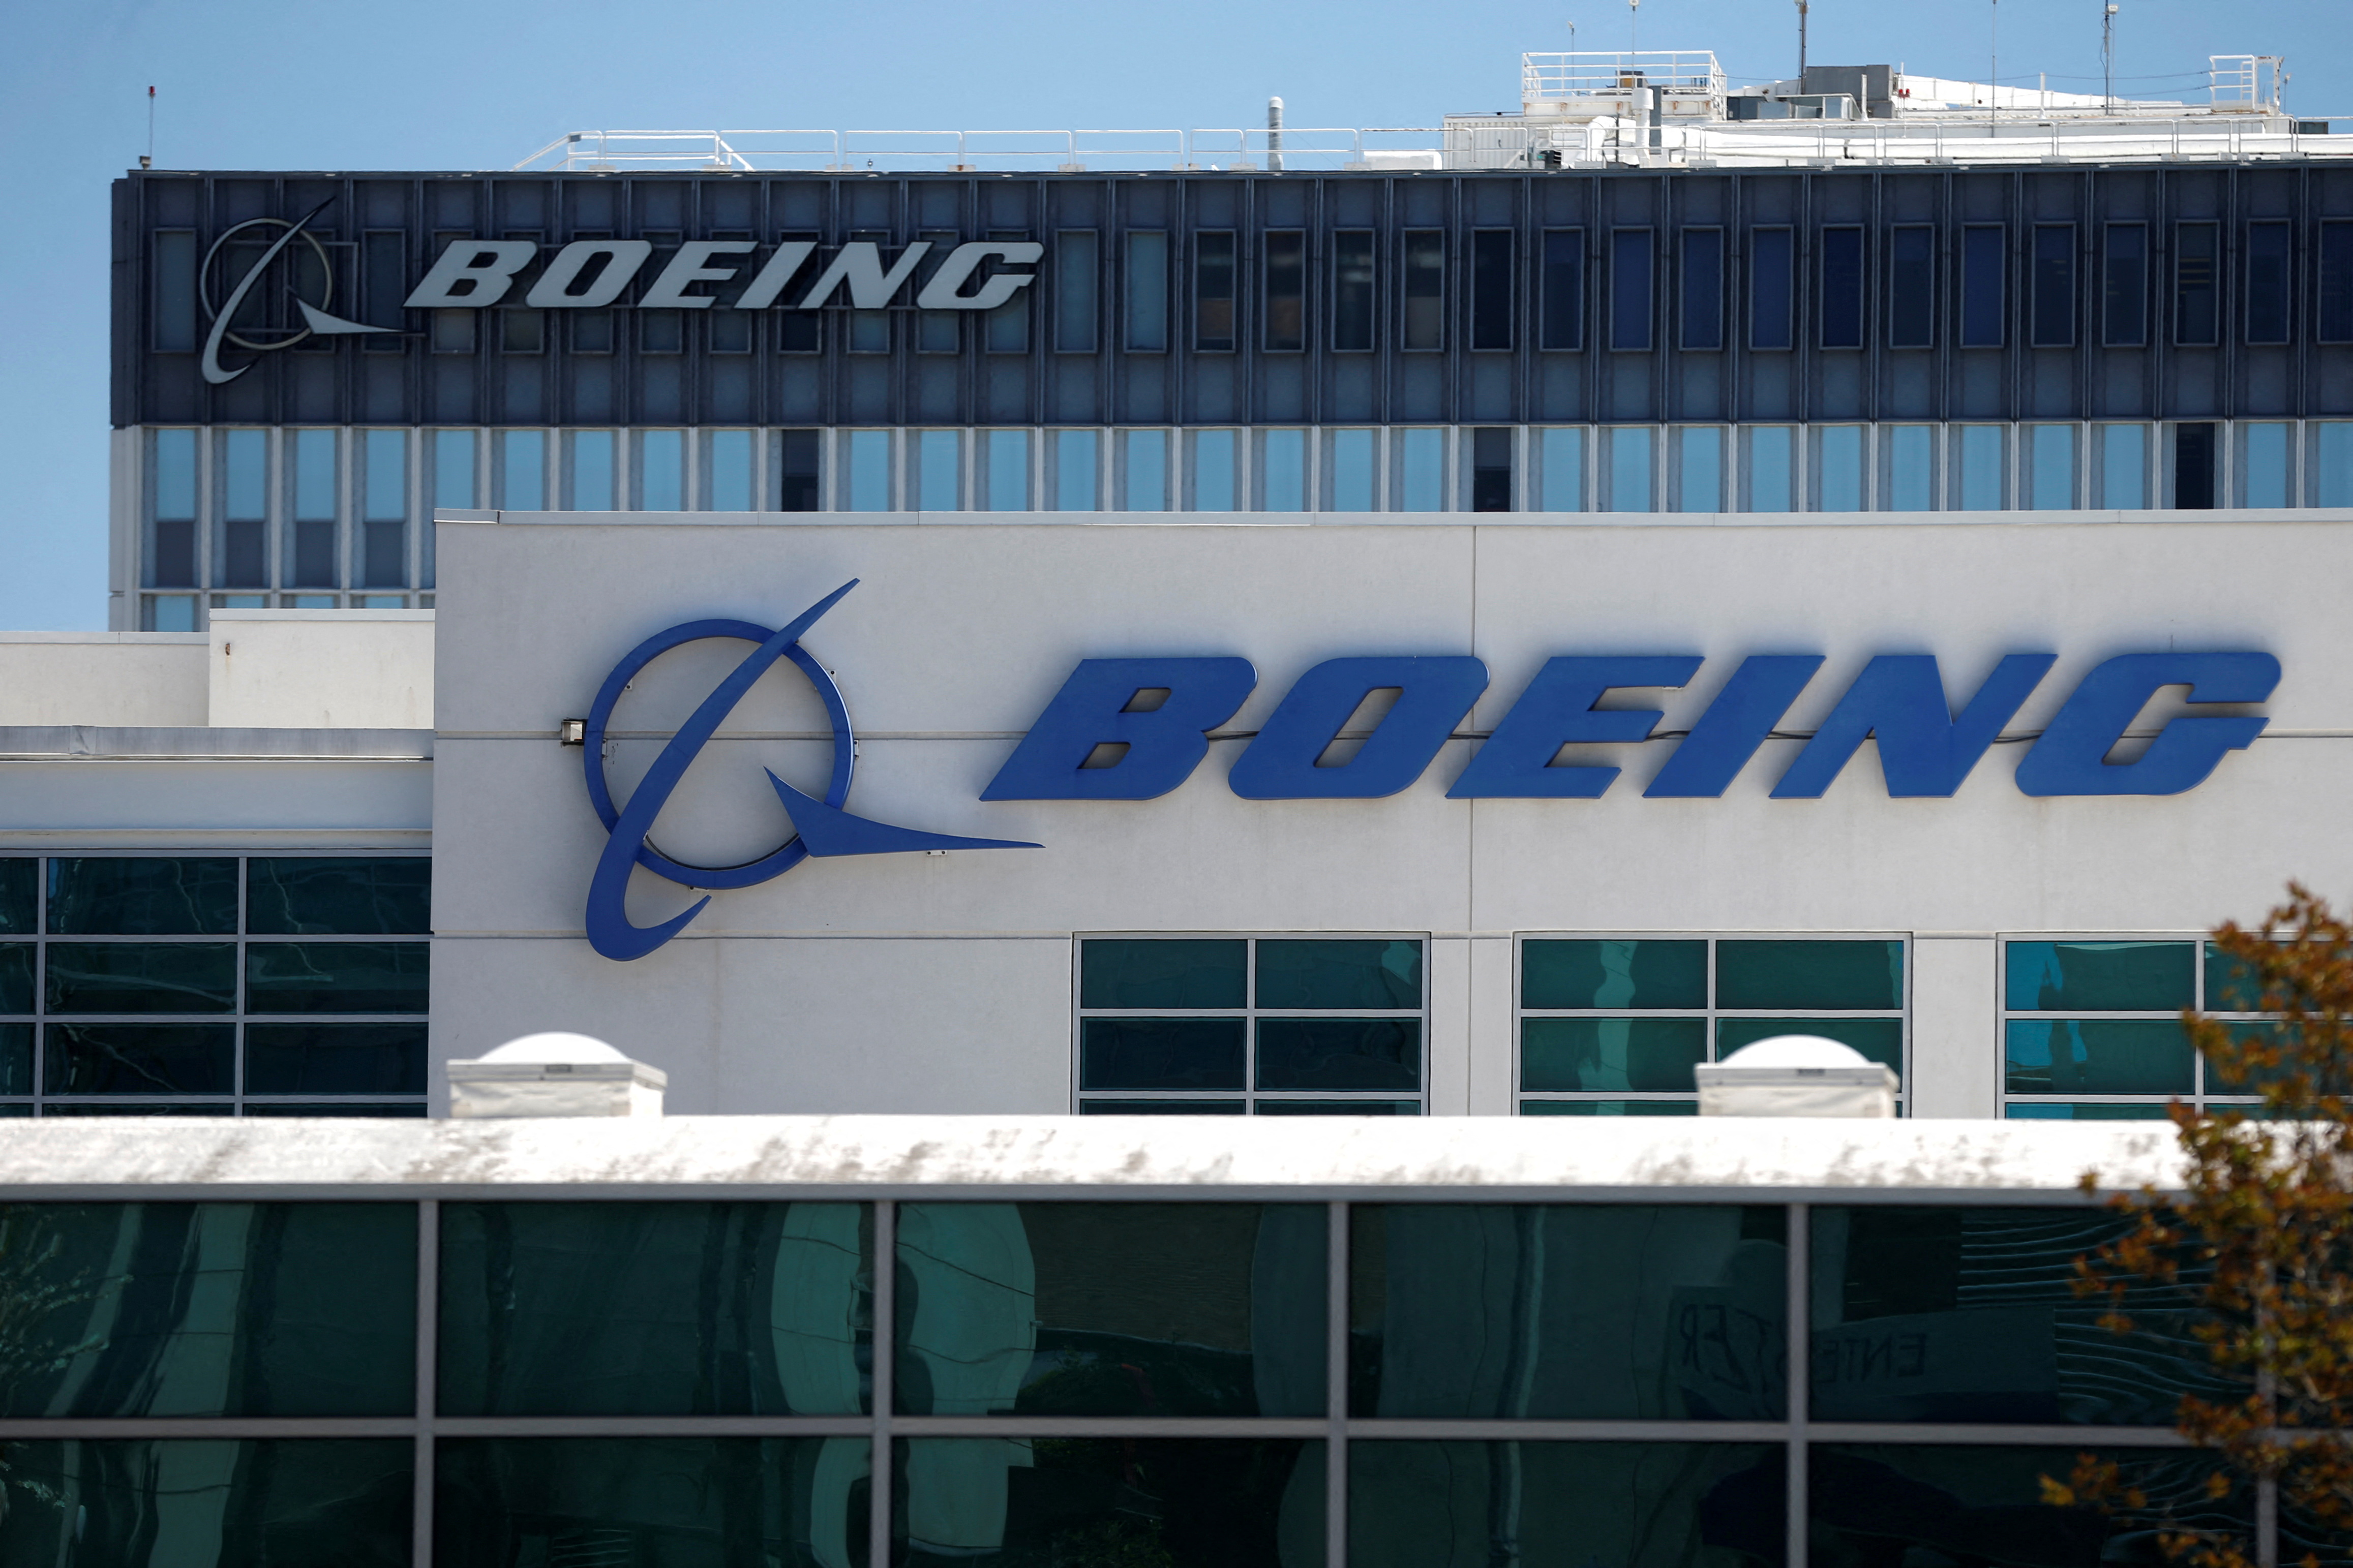 Etats-Unis: Boeing va pouvoir reprendre les livraisons de son long-courrier 787 Dreamliner